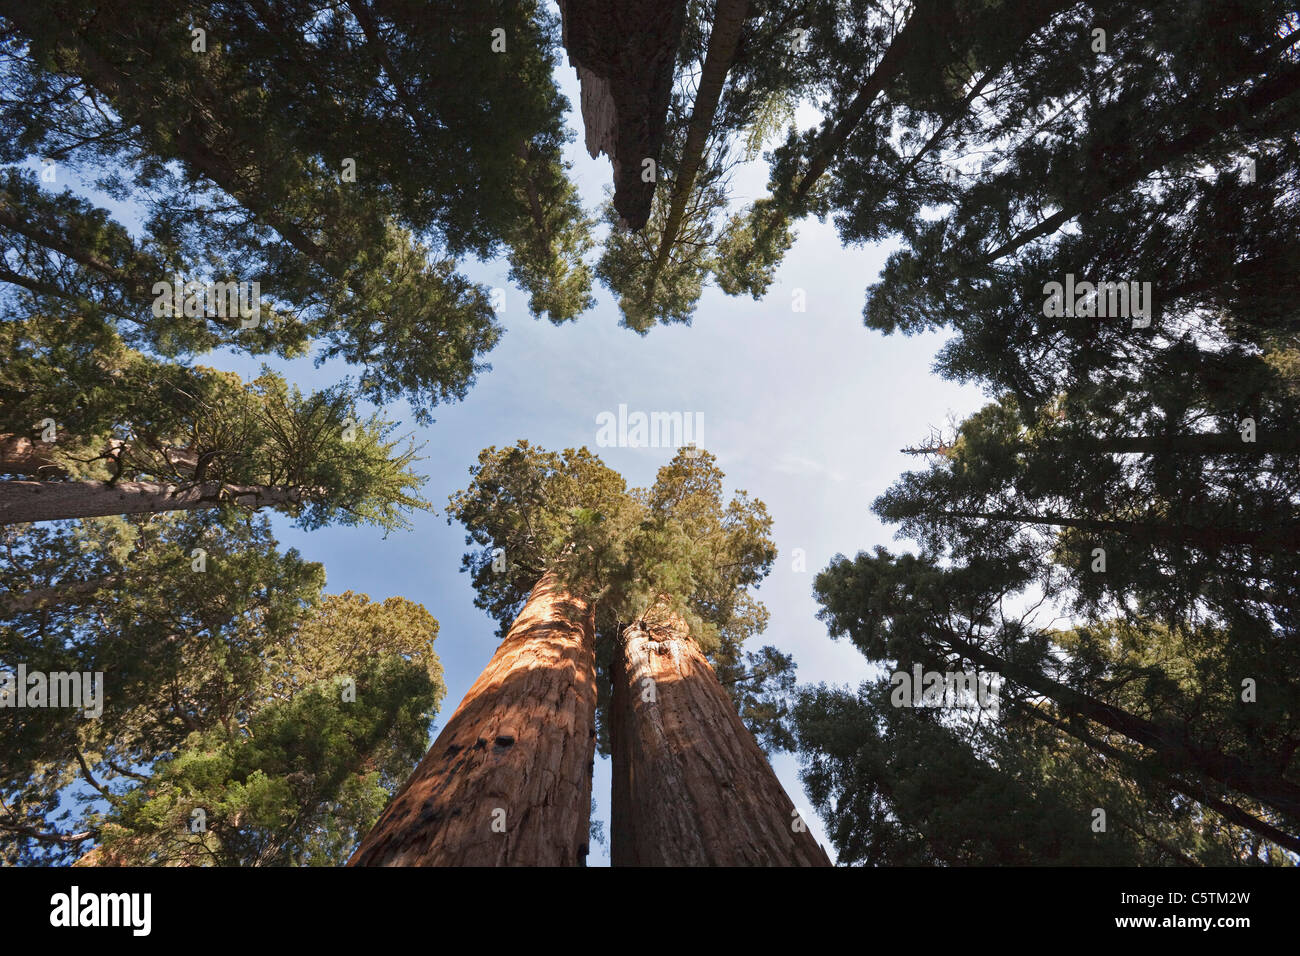 USA, California, Giant sequoias (Sequoiadendron giganteum) low angle view Stock Photo